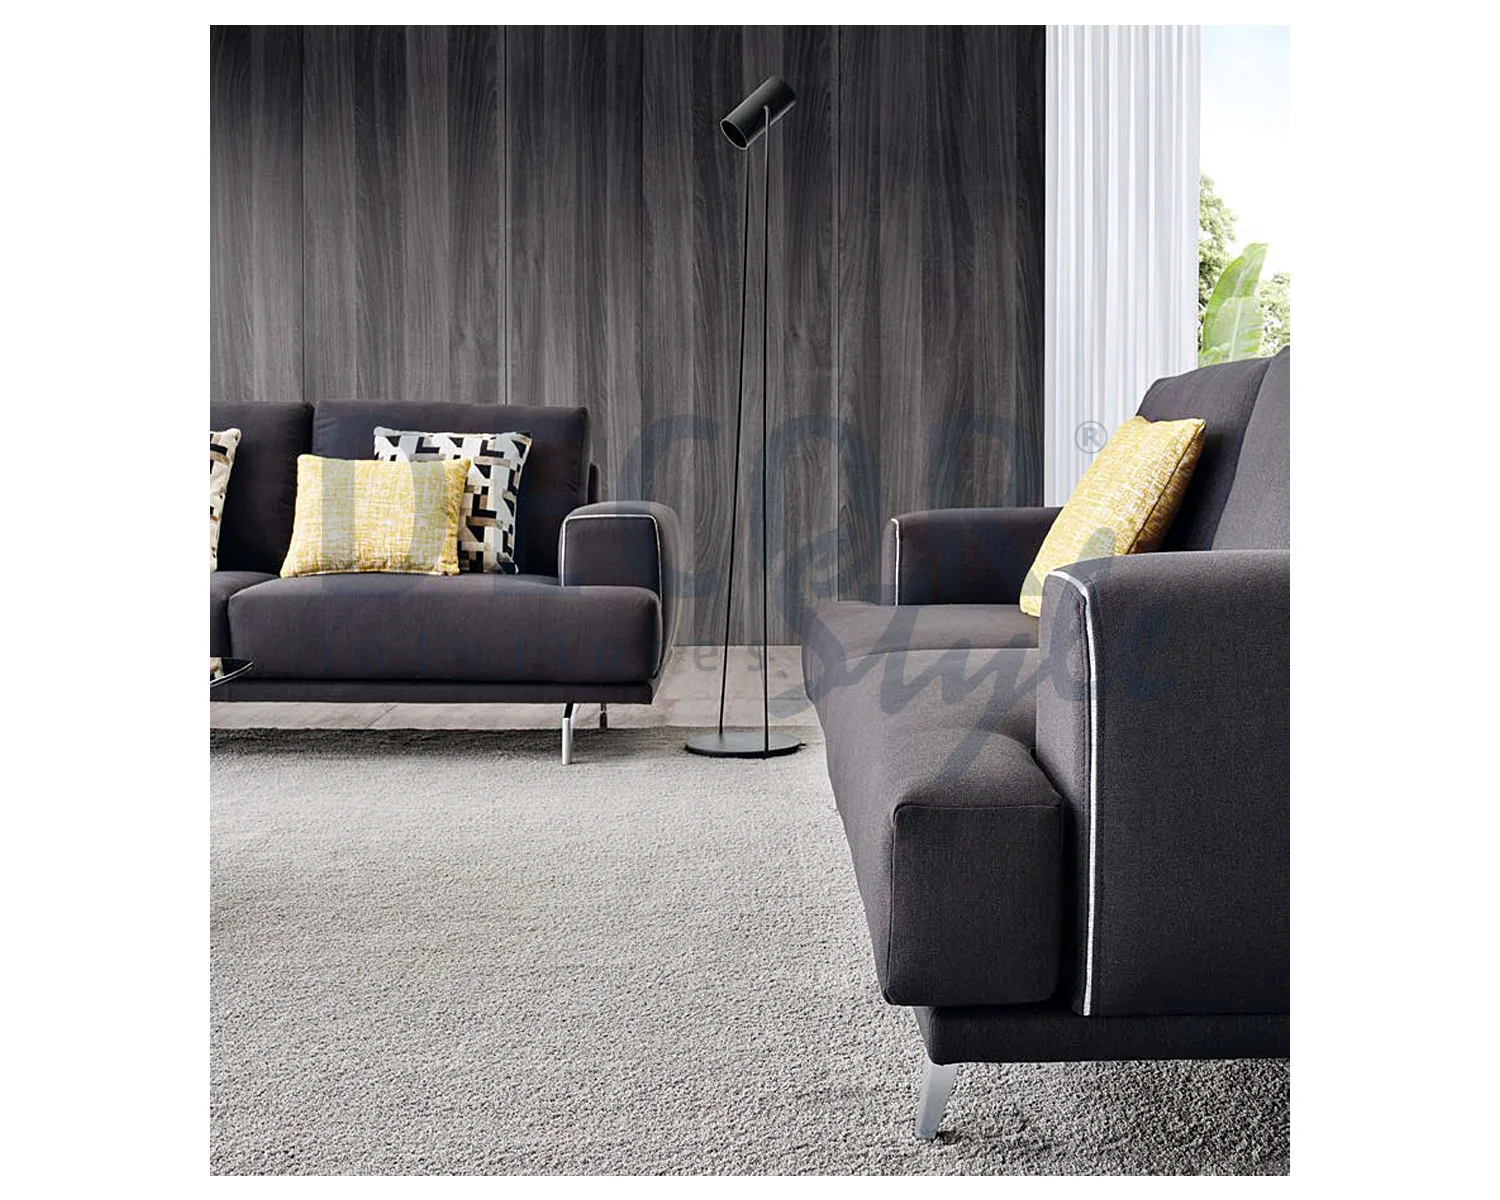 sofá akita de 2 3 lugares simples moderno elegante minimalista de linhas direitas com pés metálicos